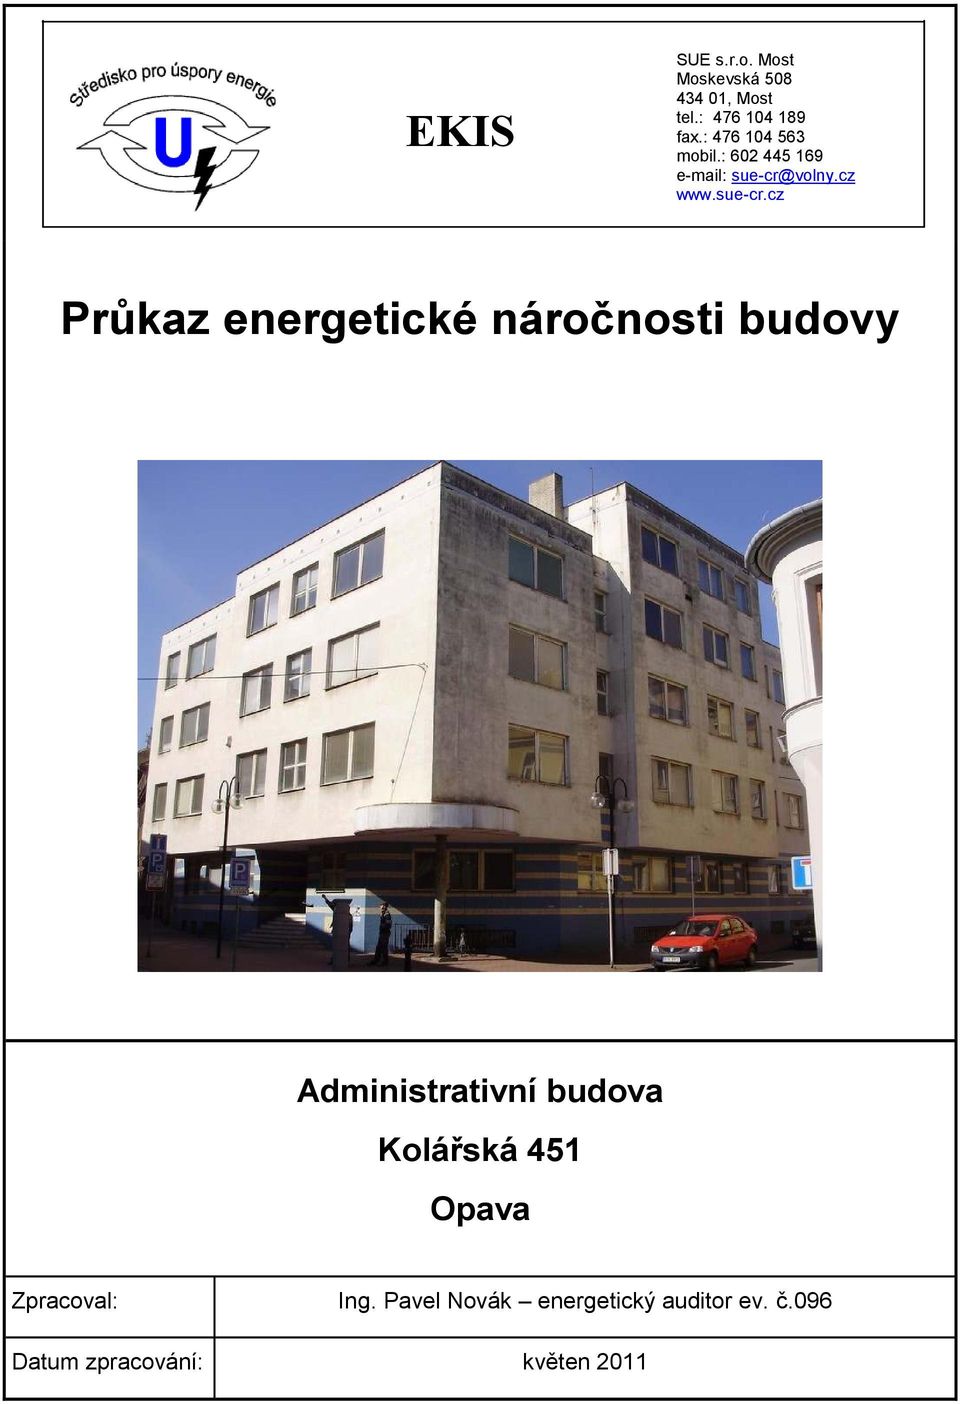 volny.cz www.suecr.